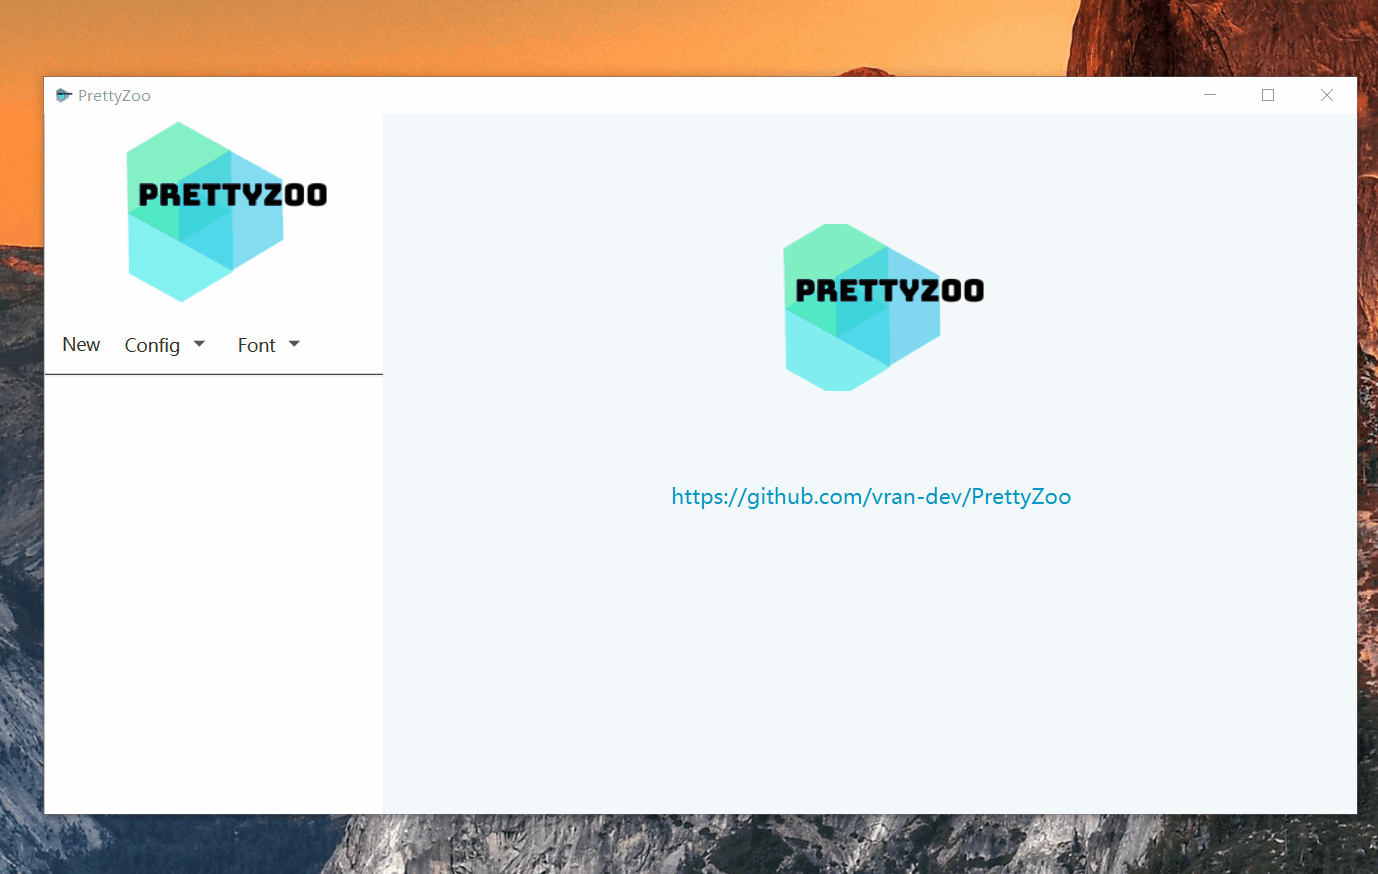 PrettyZoo V1.8.0：凤凰涅槃，值得收藏的 Zookeeper 图形化工具